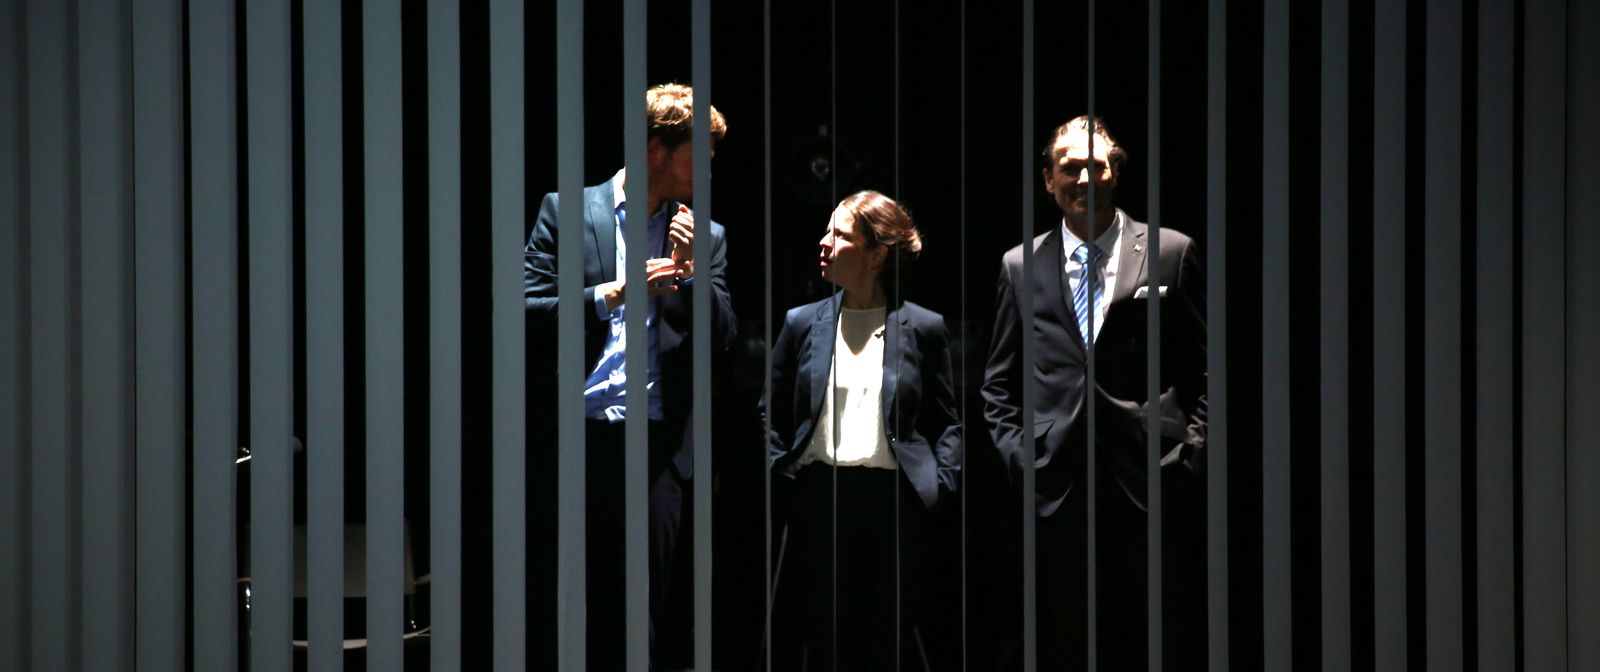 Drei Personen in Anzug stehen in einem dunklen Raum. Die Sicht auf die Personen wird durch einen grauen Lamellen-Vorhang gestört.